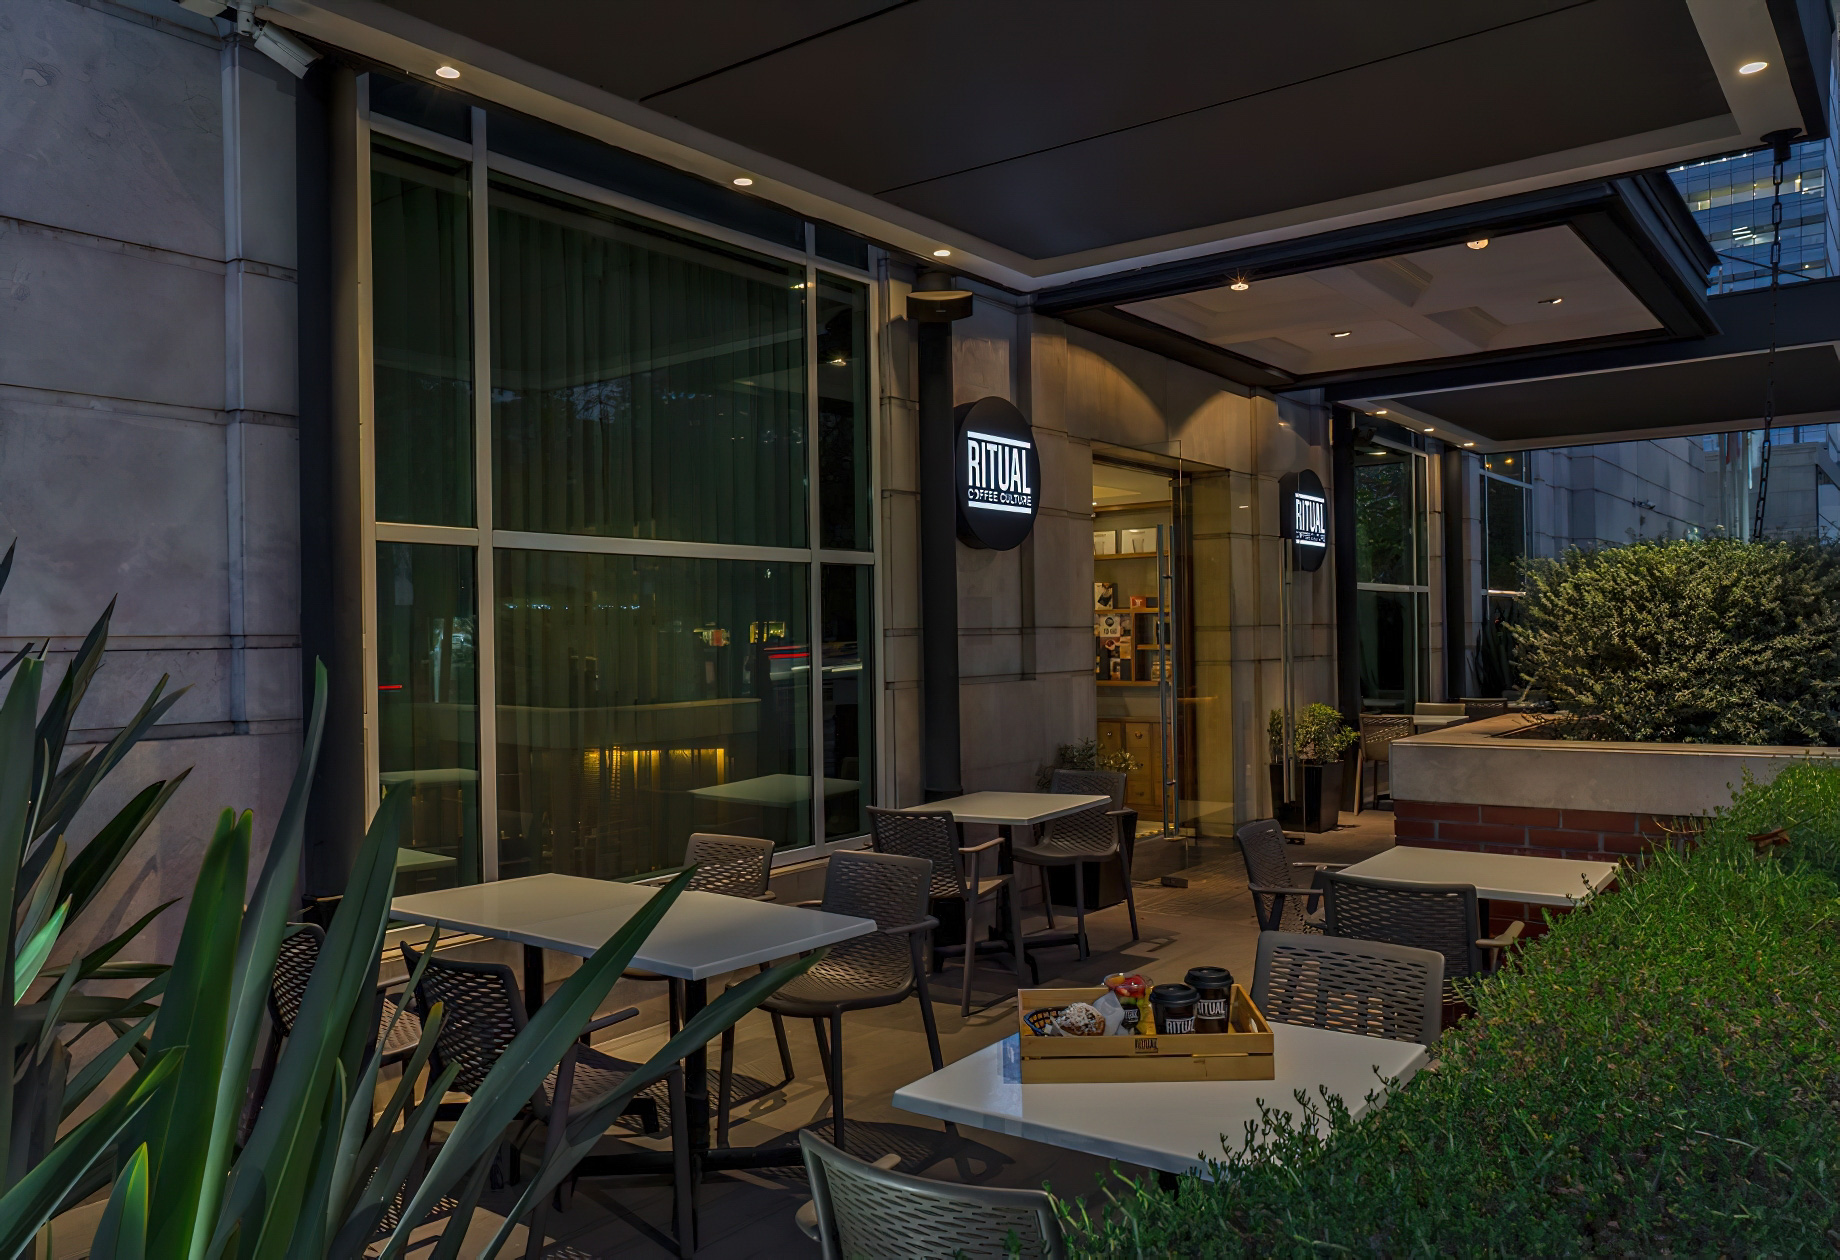 The Ritz-Carlton, Santiago Hotel – Santiago, Chile – Cafe Ritual Entrance